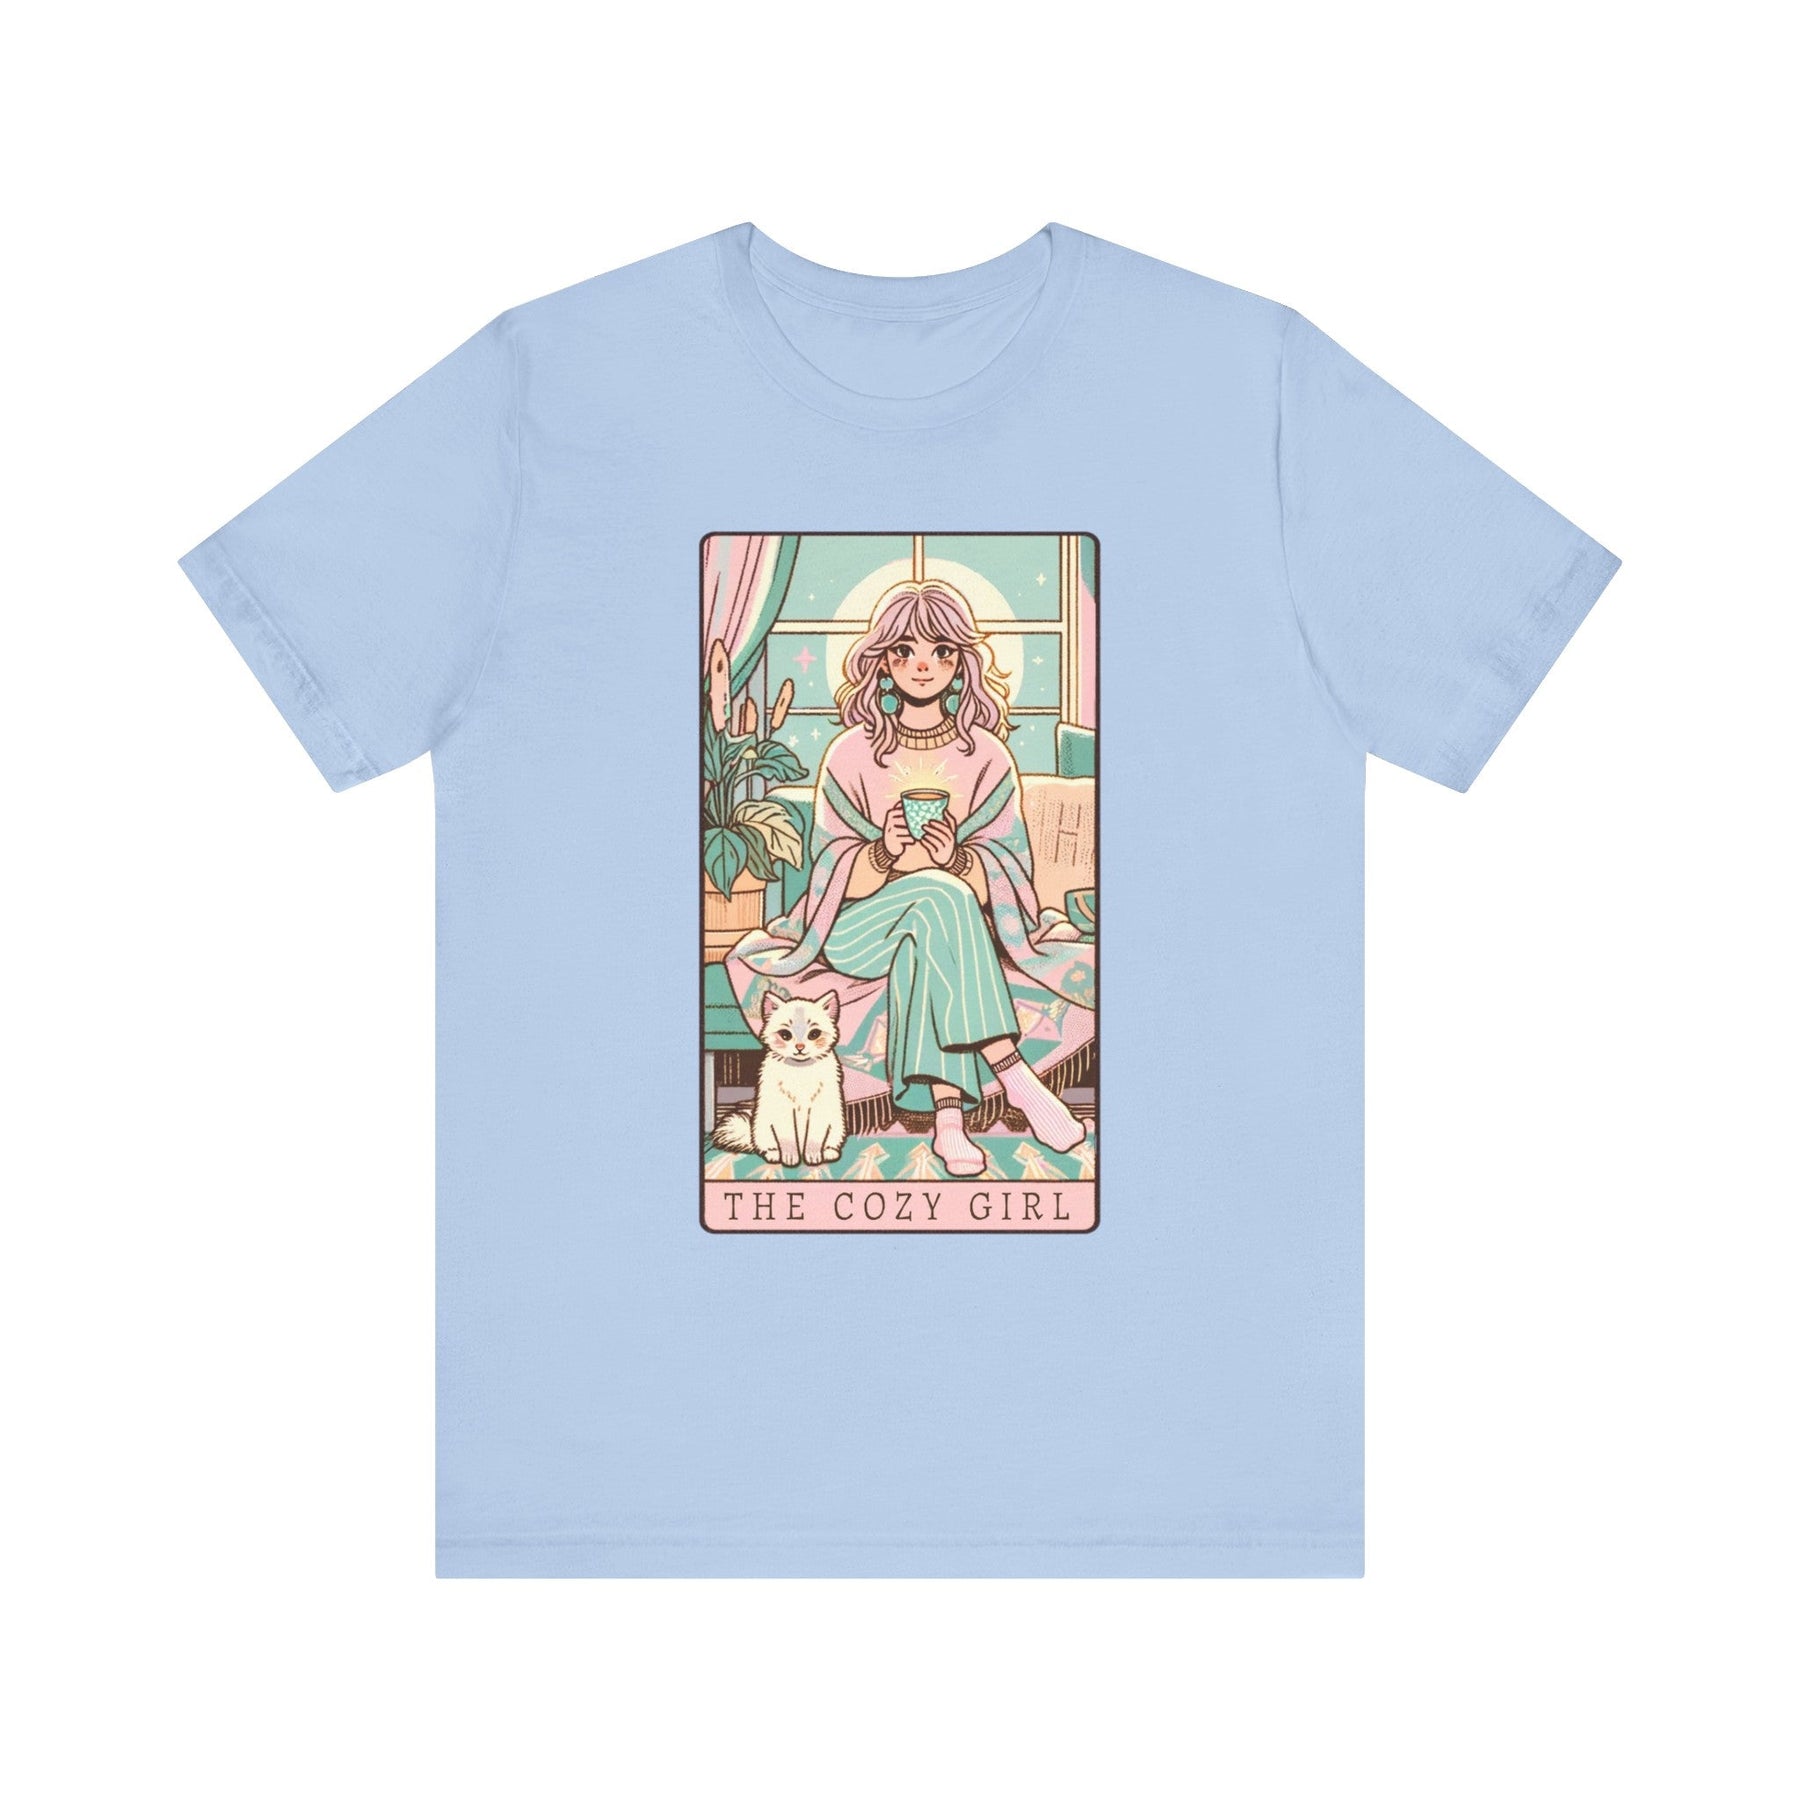 The Cozy Girl Day Tarot Card Short Sleeve Tee - Goth Cloth Co.T - Shirt30272087137761791267